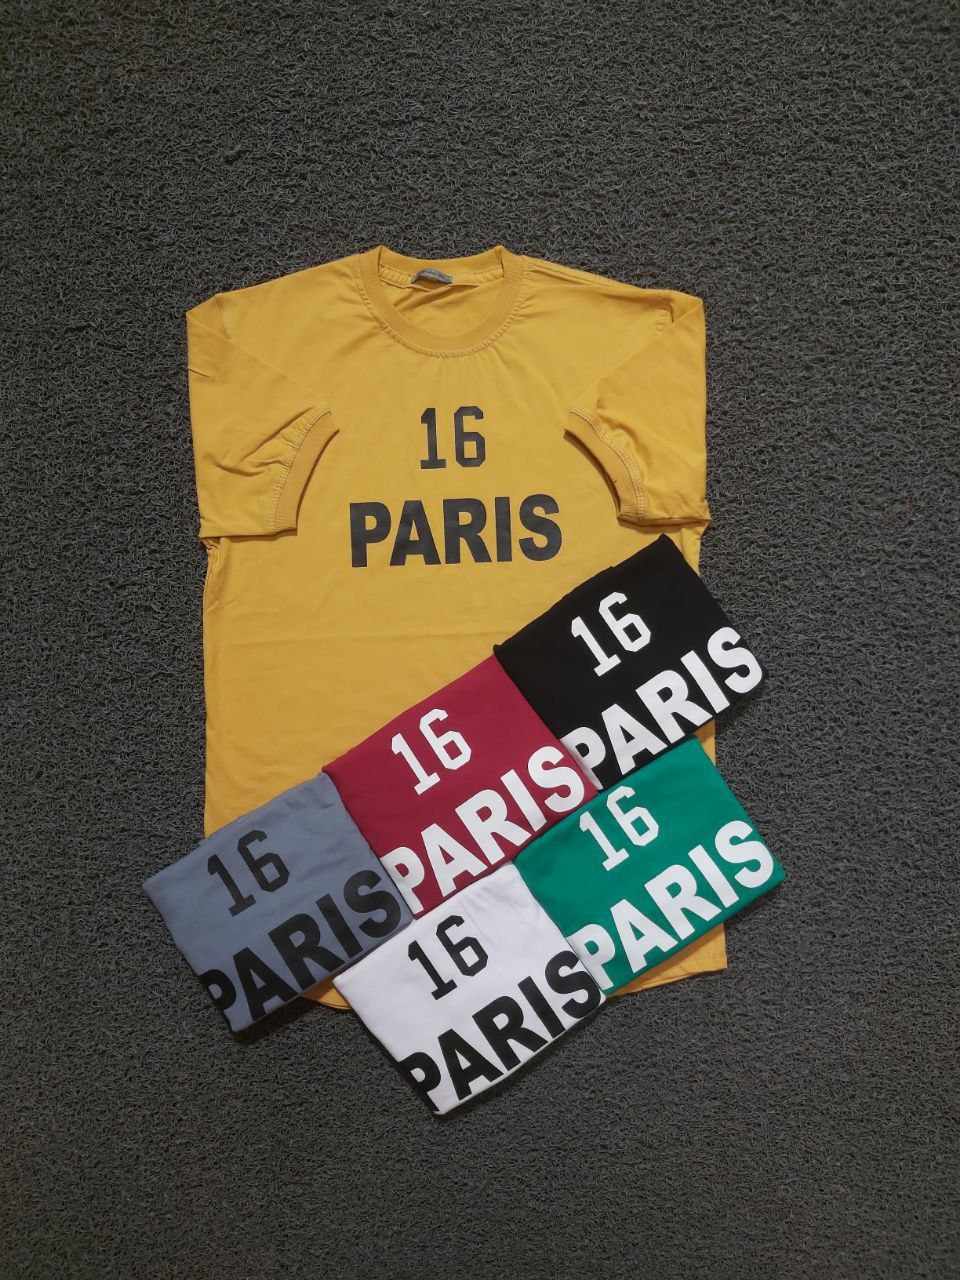 خرید عمده تیشرت سایز L,XL,2XL جنس پنبه سوپر طرح 16 PARIS دارای رنگ بندی